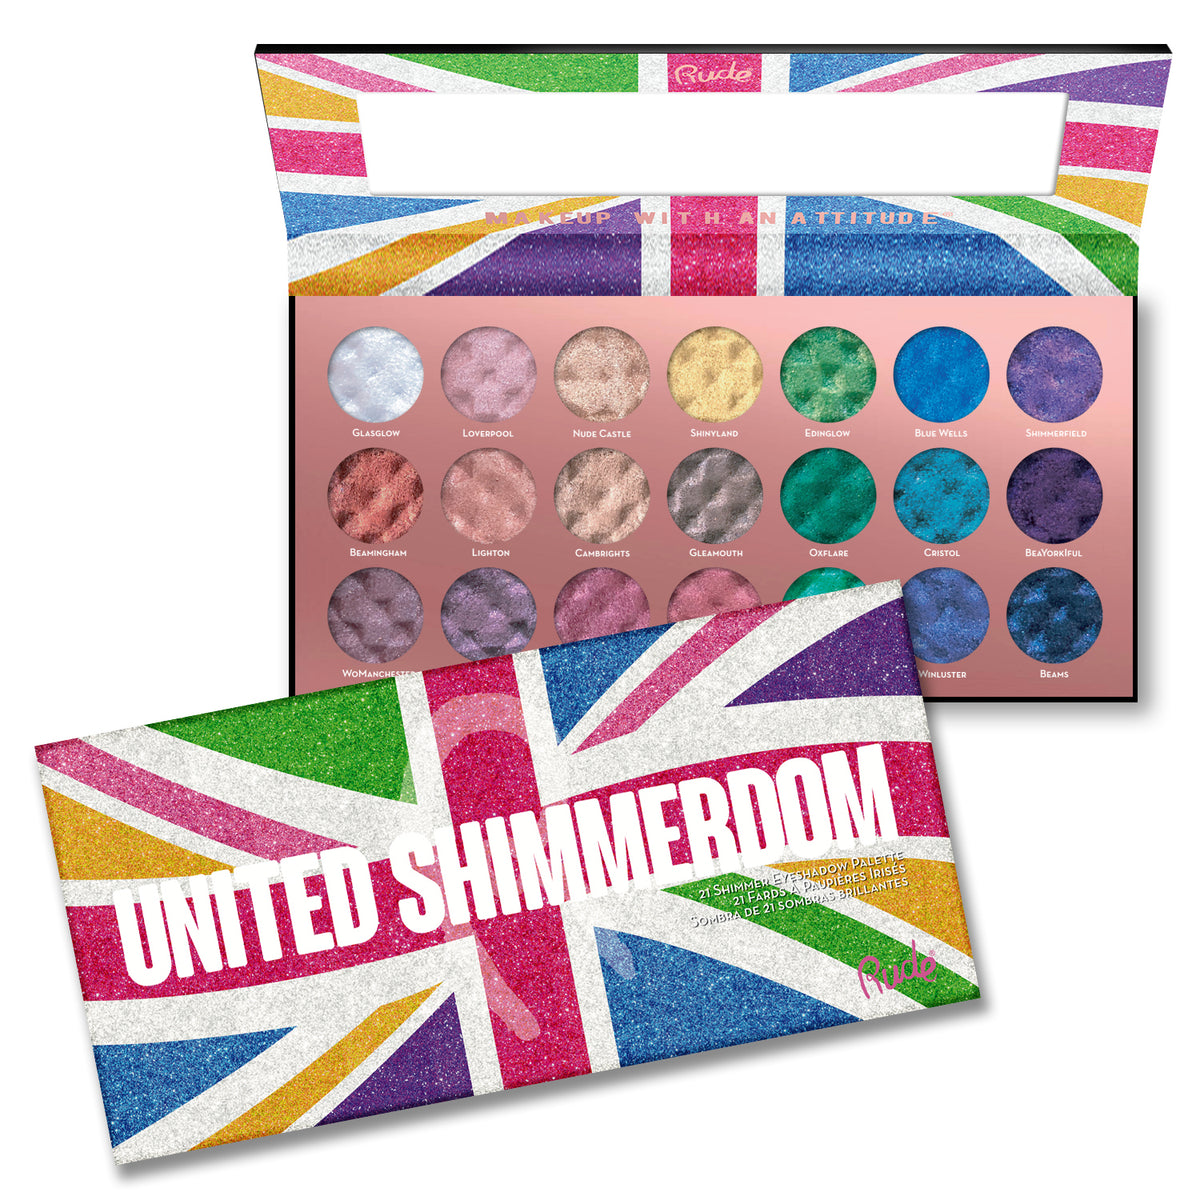 United Shimmerdom -  21 Shimmer Eyeshadow Palette